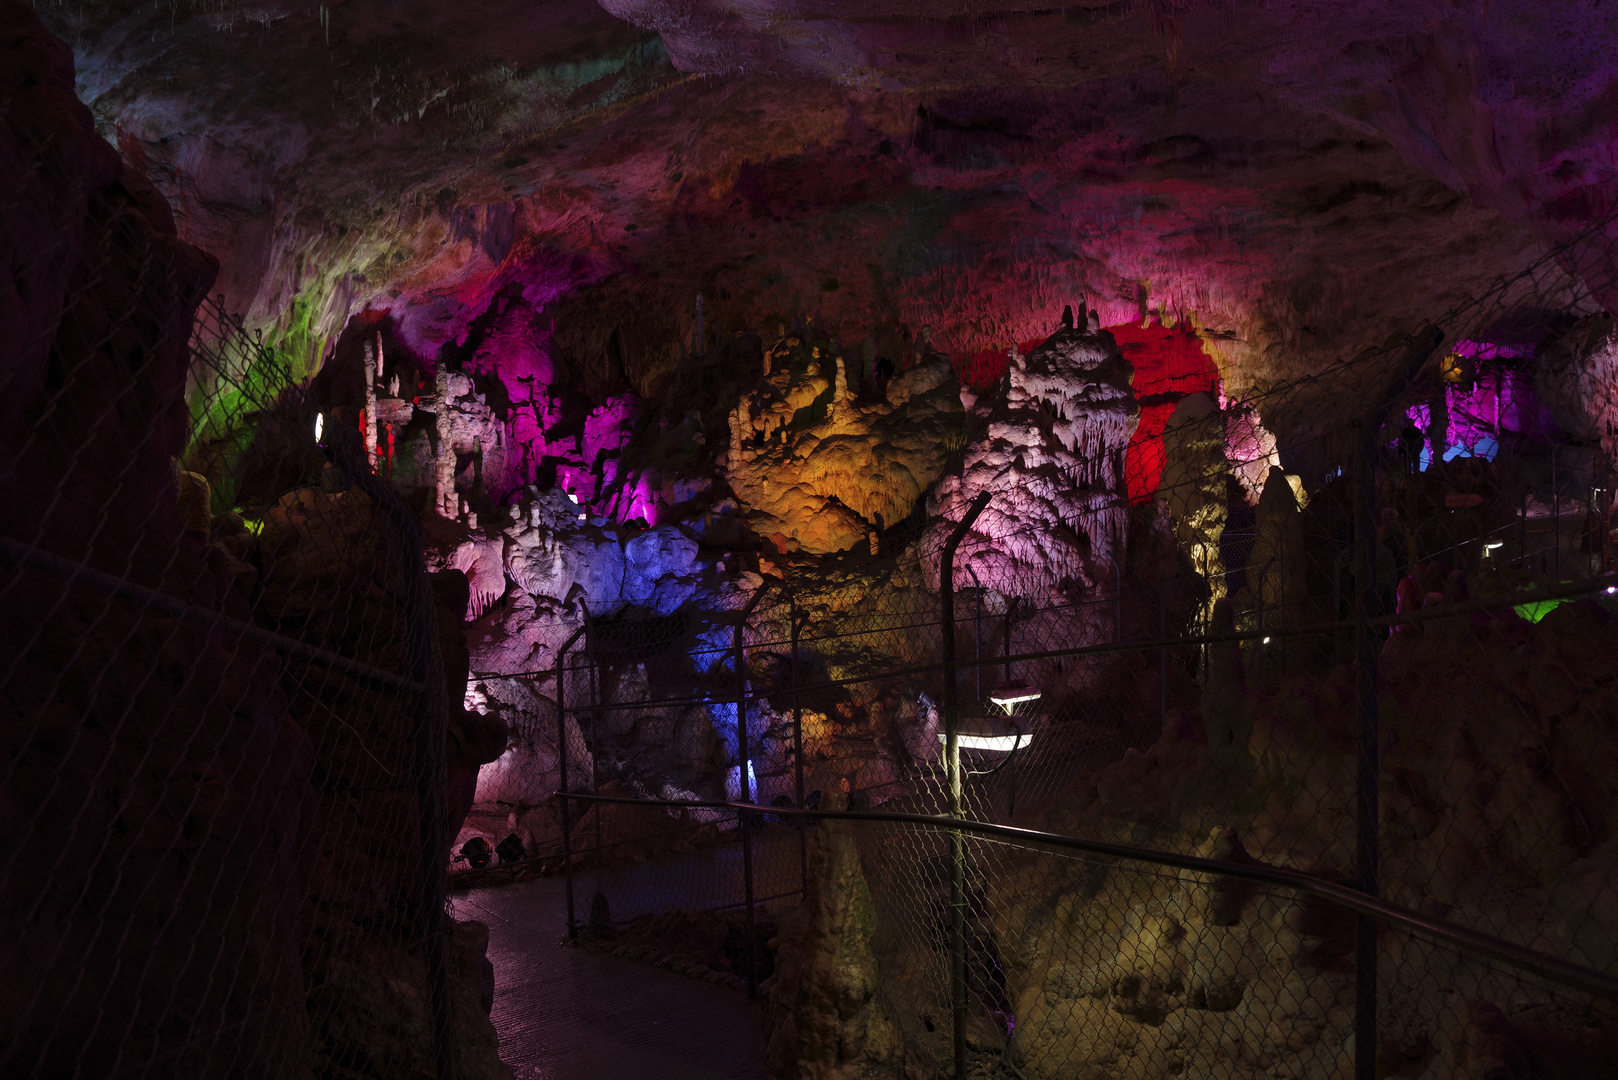 Illuminierte Bärenhöhle